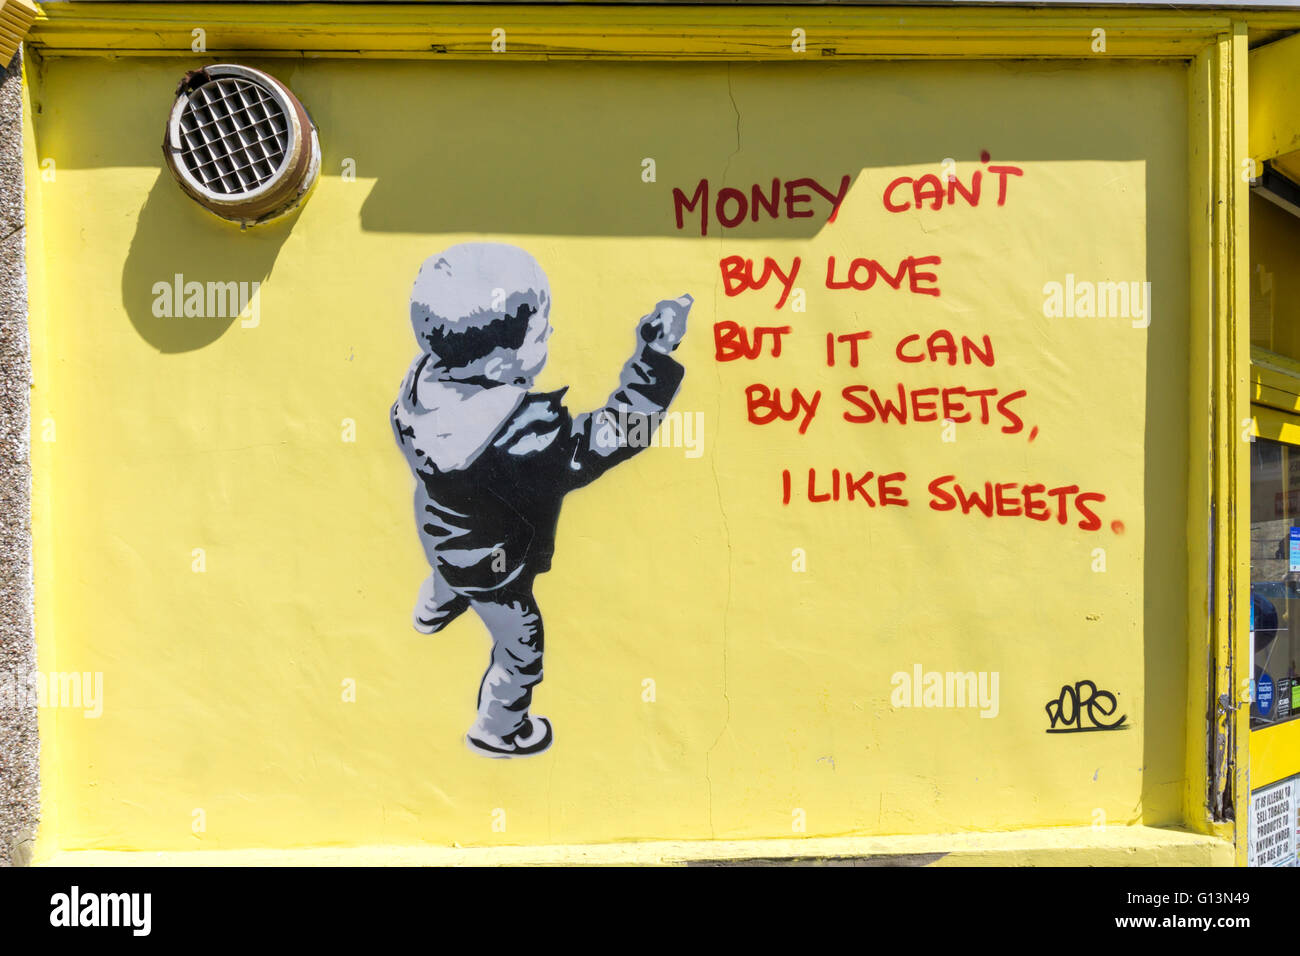 "Geld nicht kaufen kann Liebe aber es kann Süßigkeiten zu kaufen, ich mag Süßigkeiten" Graffiti von Schmiere auf ein Süßwarengeschäft in Beckenham, Südlondon. Stockfoto